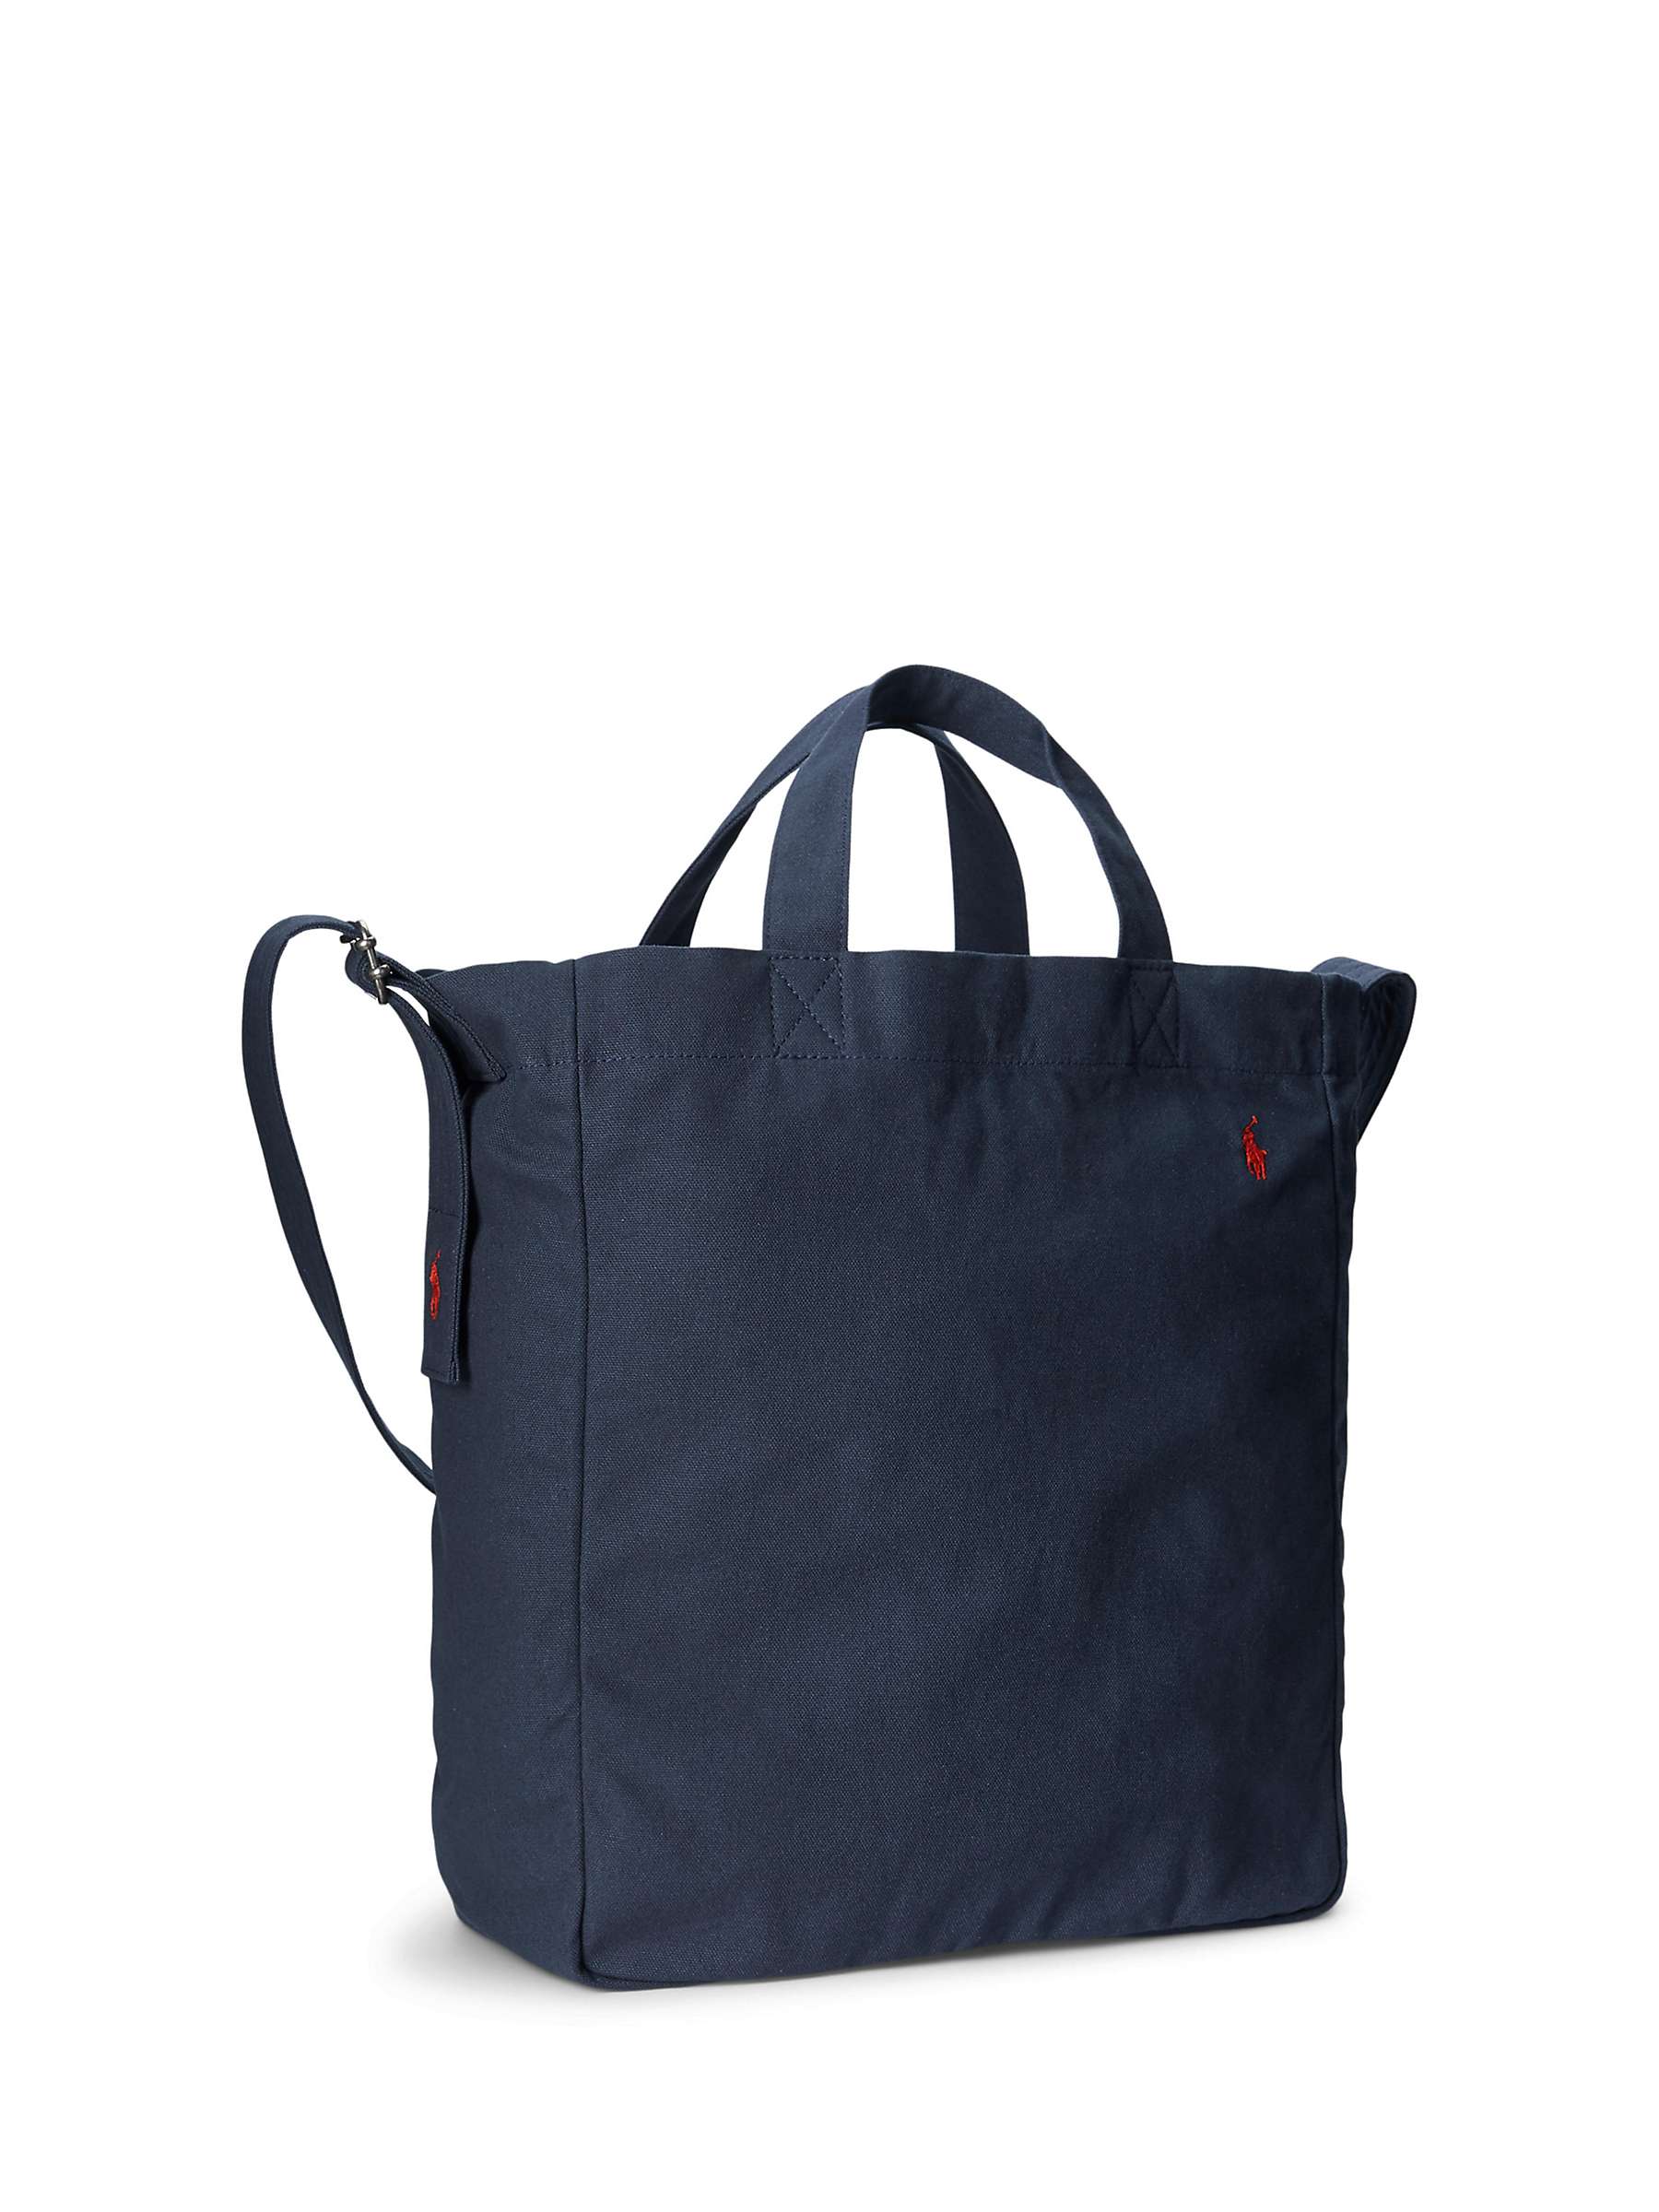 Buy Ralph Lauren Canvas Tote Bag, Navy Online at johnlewis.com